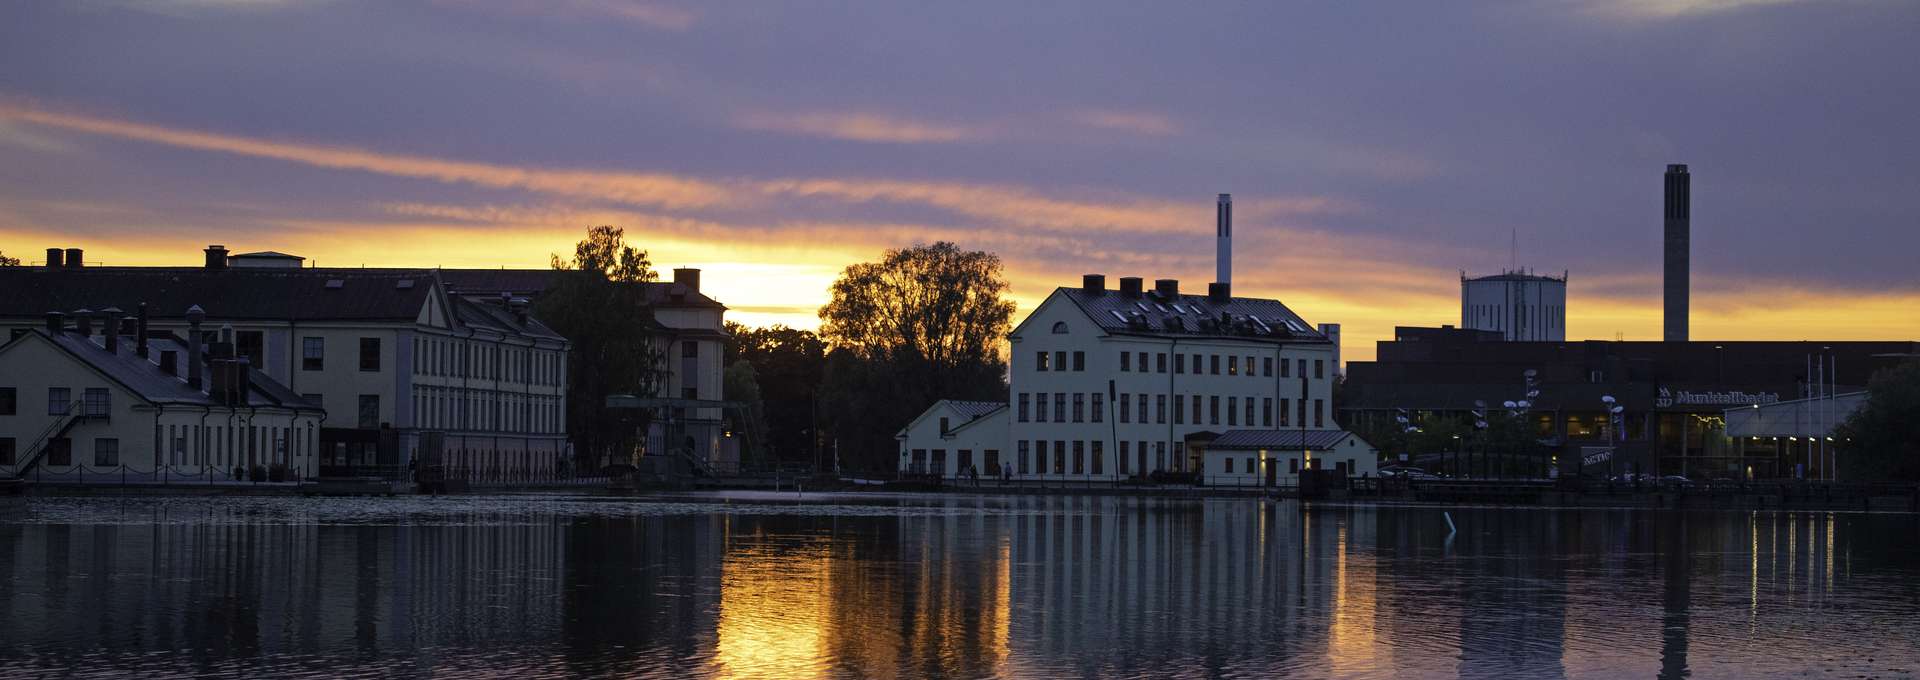 A view of Munktellstaden in Eskilstuna